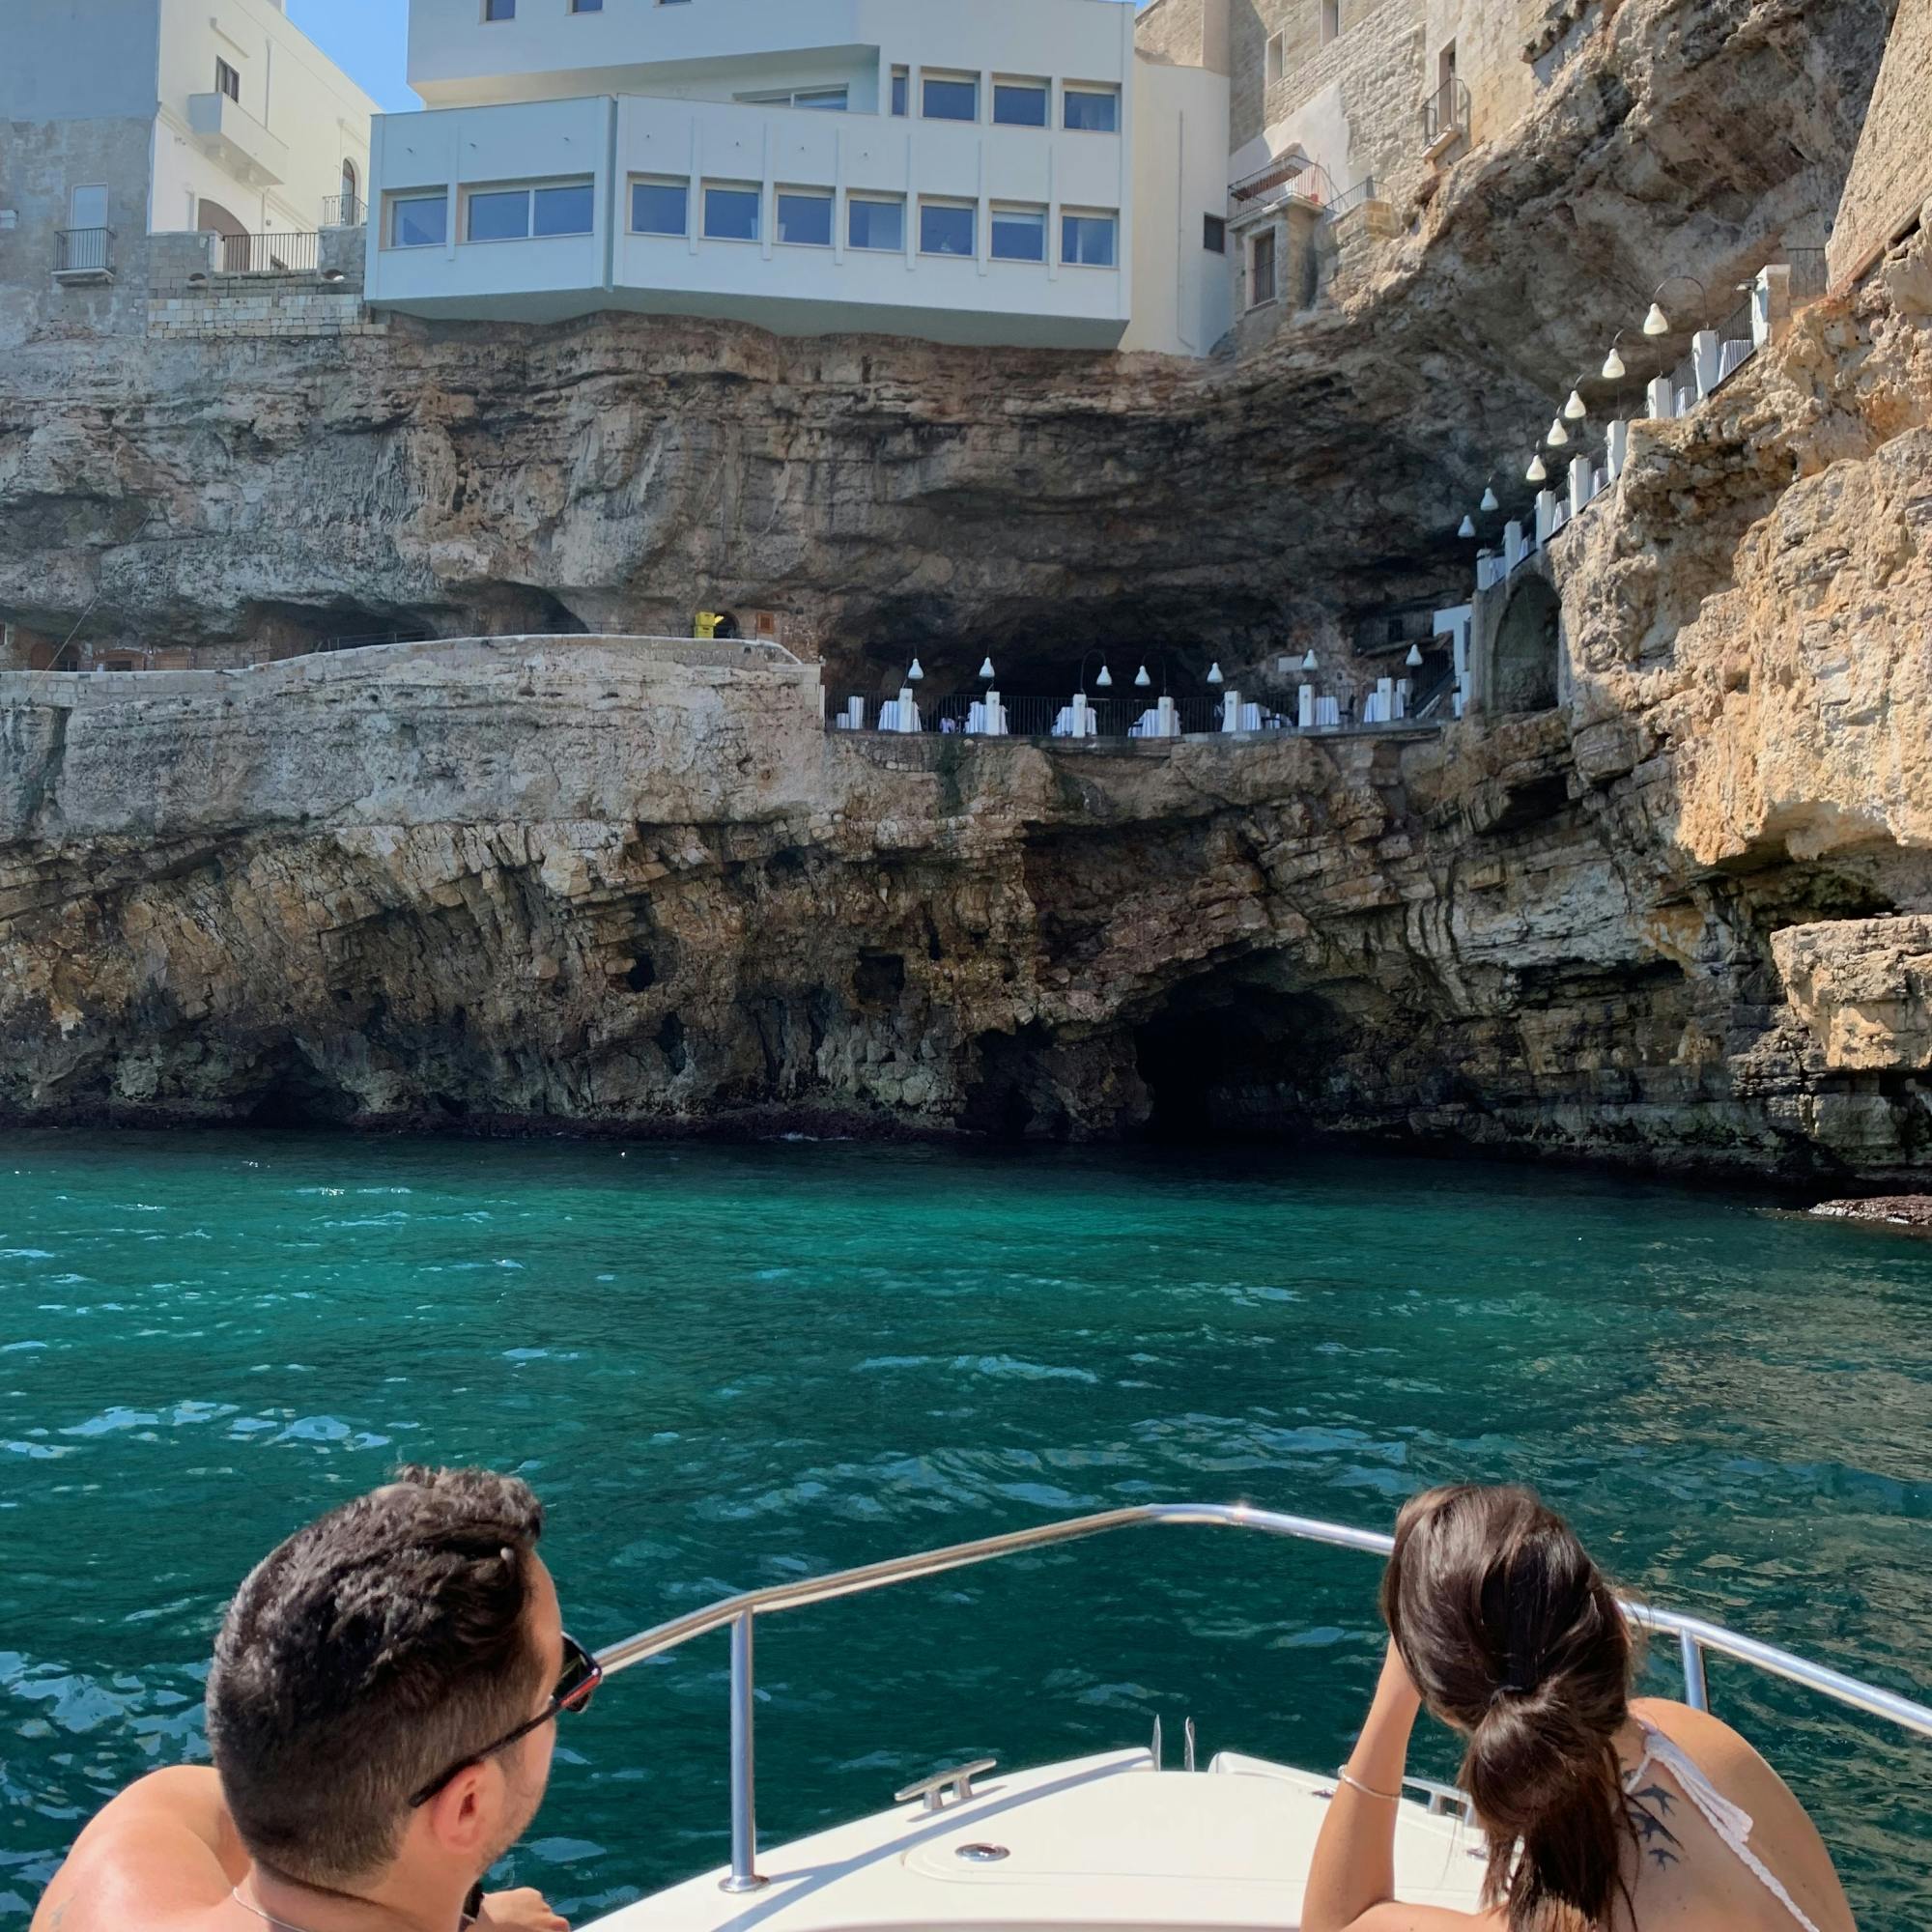 Crociera in barca condivisa alle Grotte di Polignano a Mare